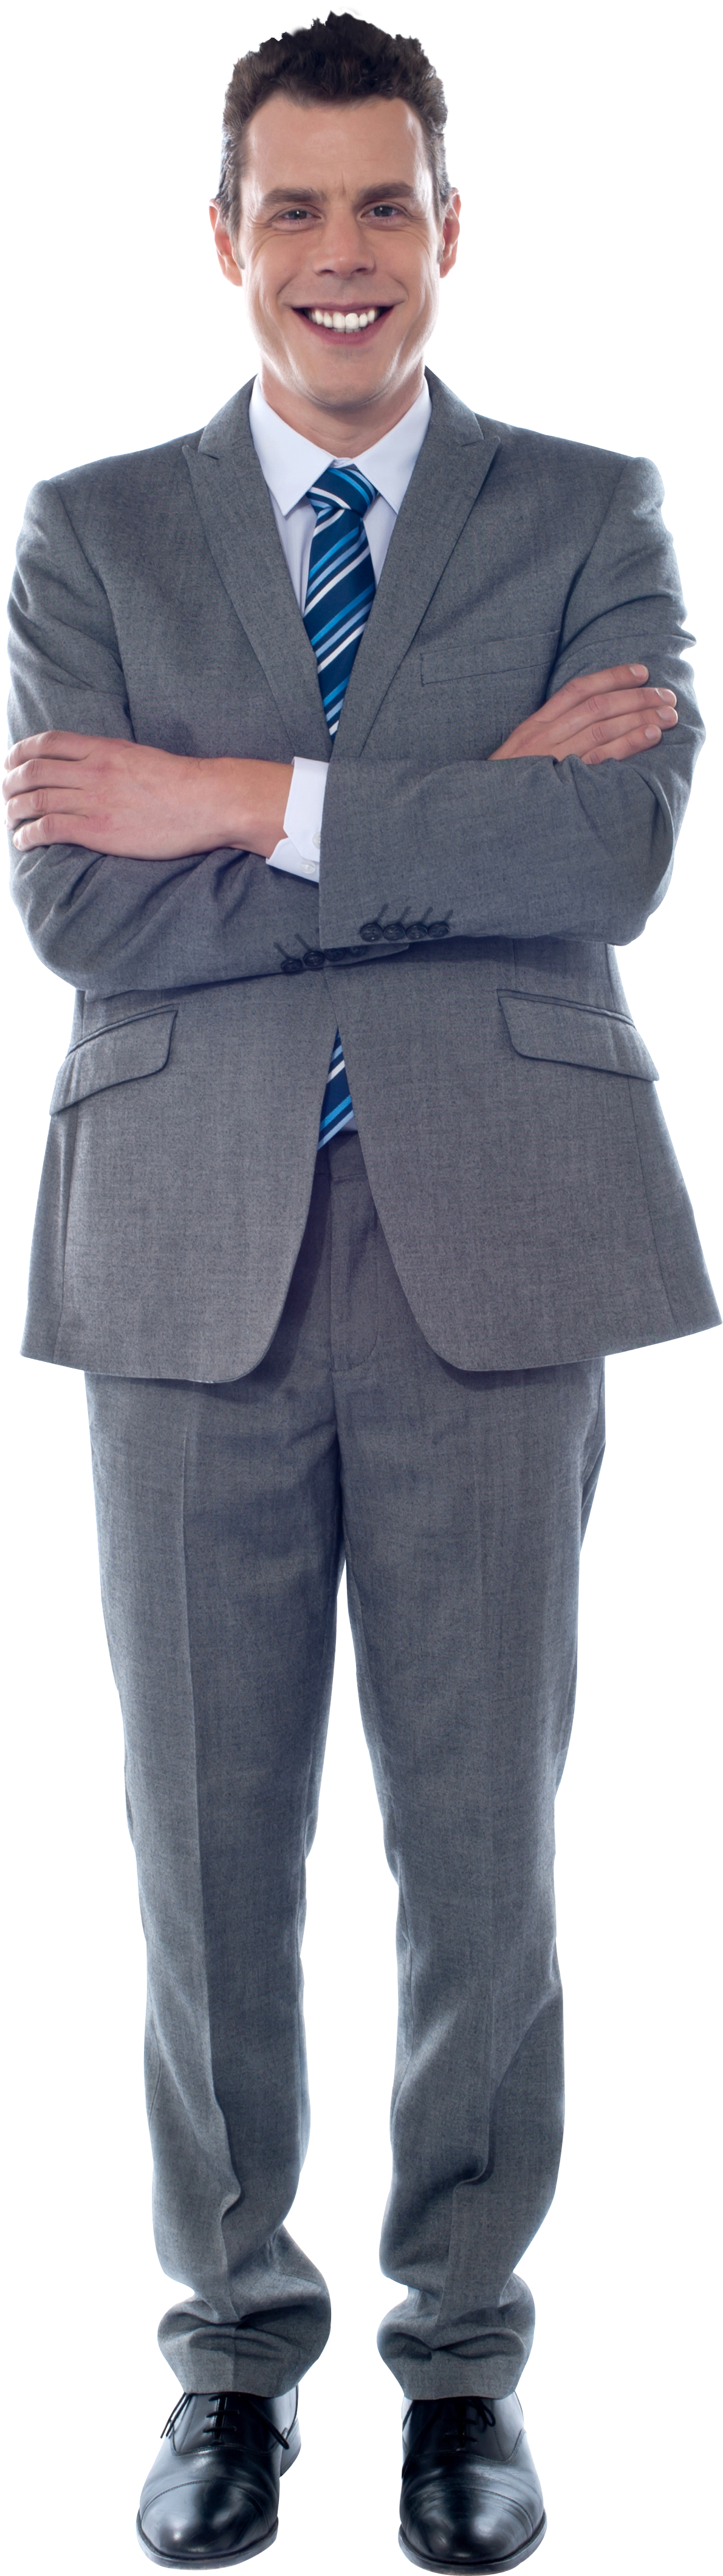 Confident Businessmanin Grey Suit.png